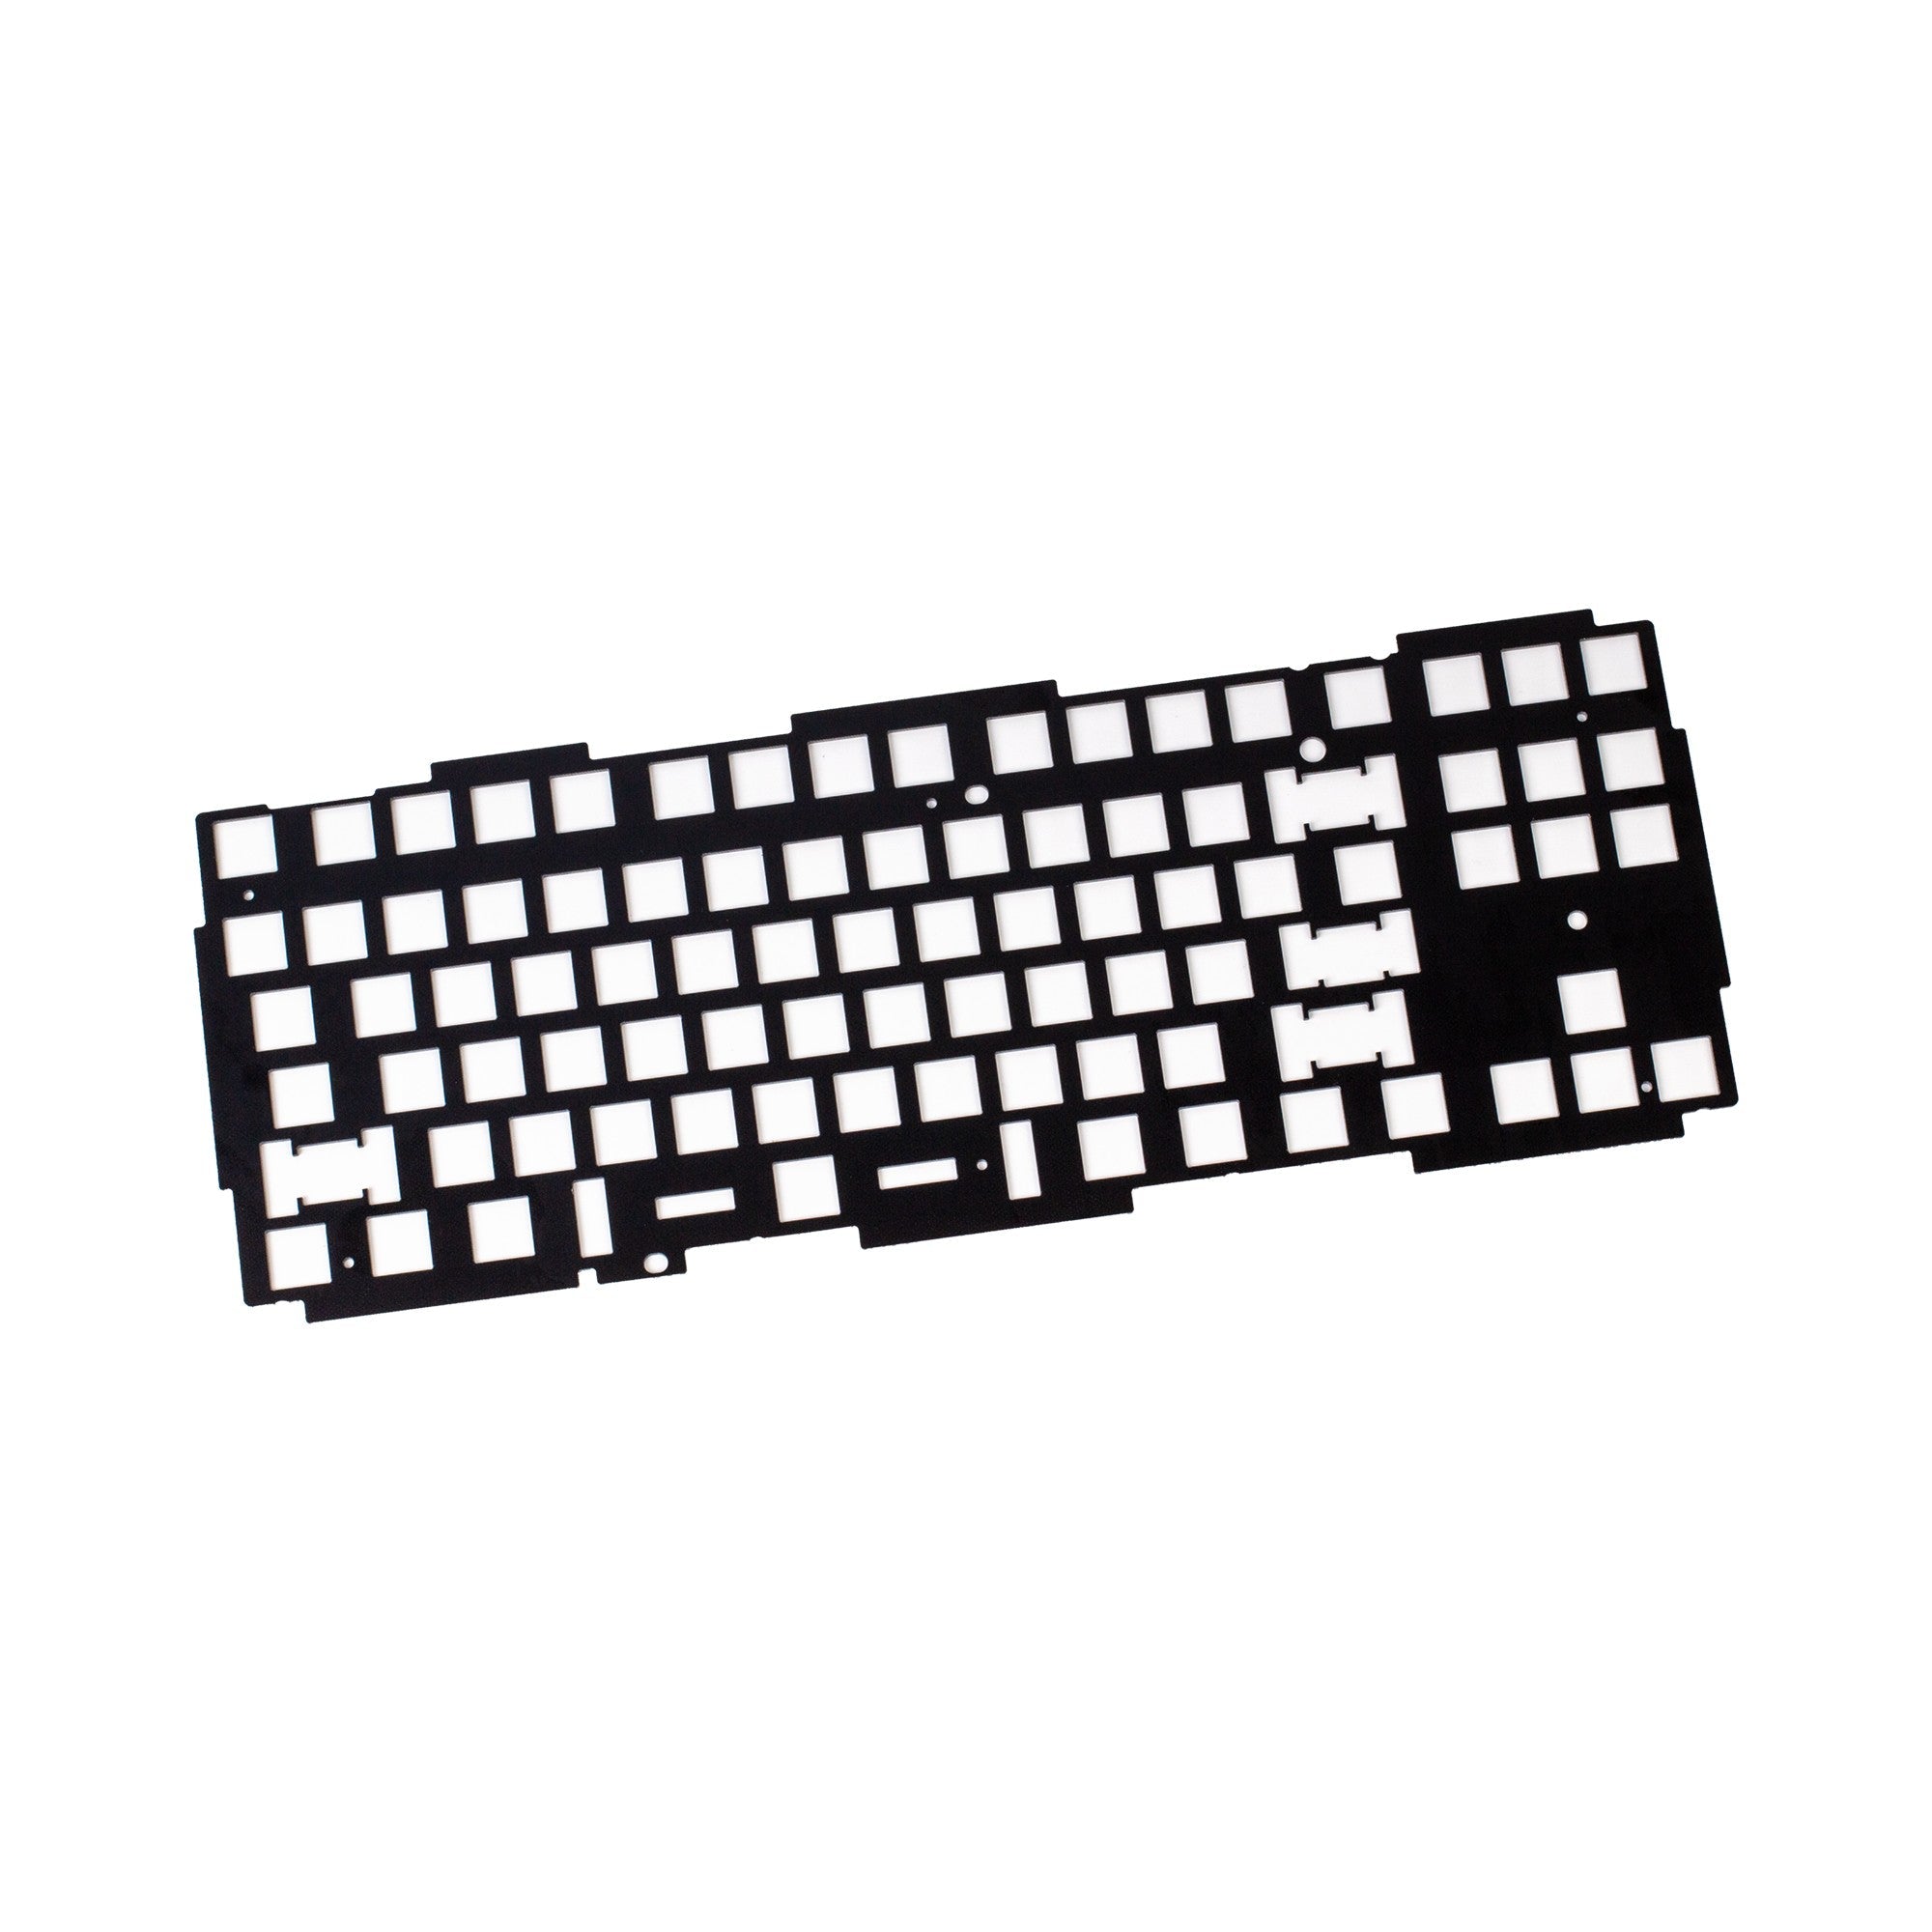 Keychron Q3 keyboard knob aluminum plate ANSI layout